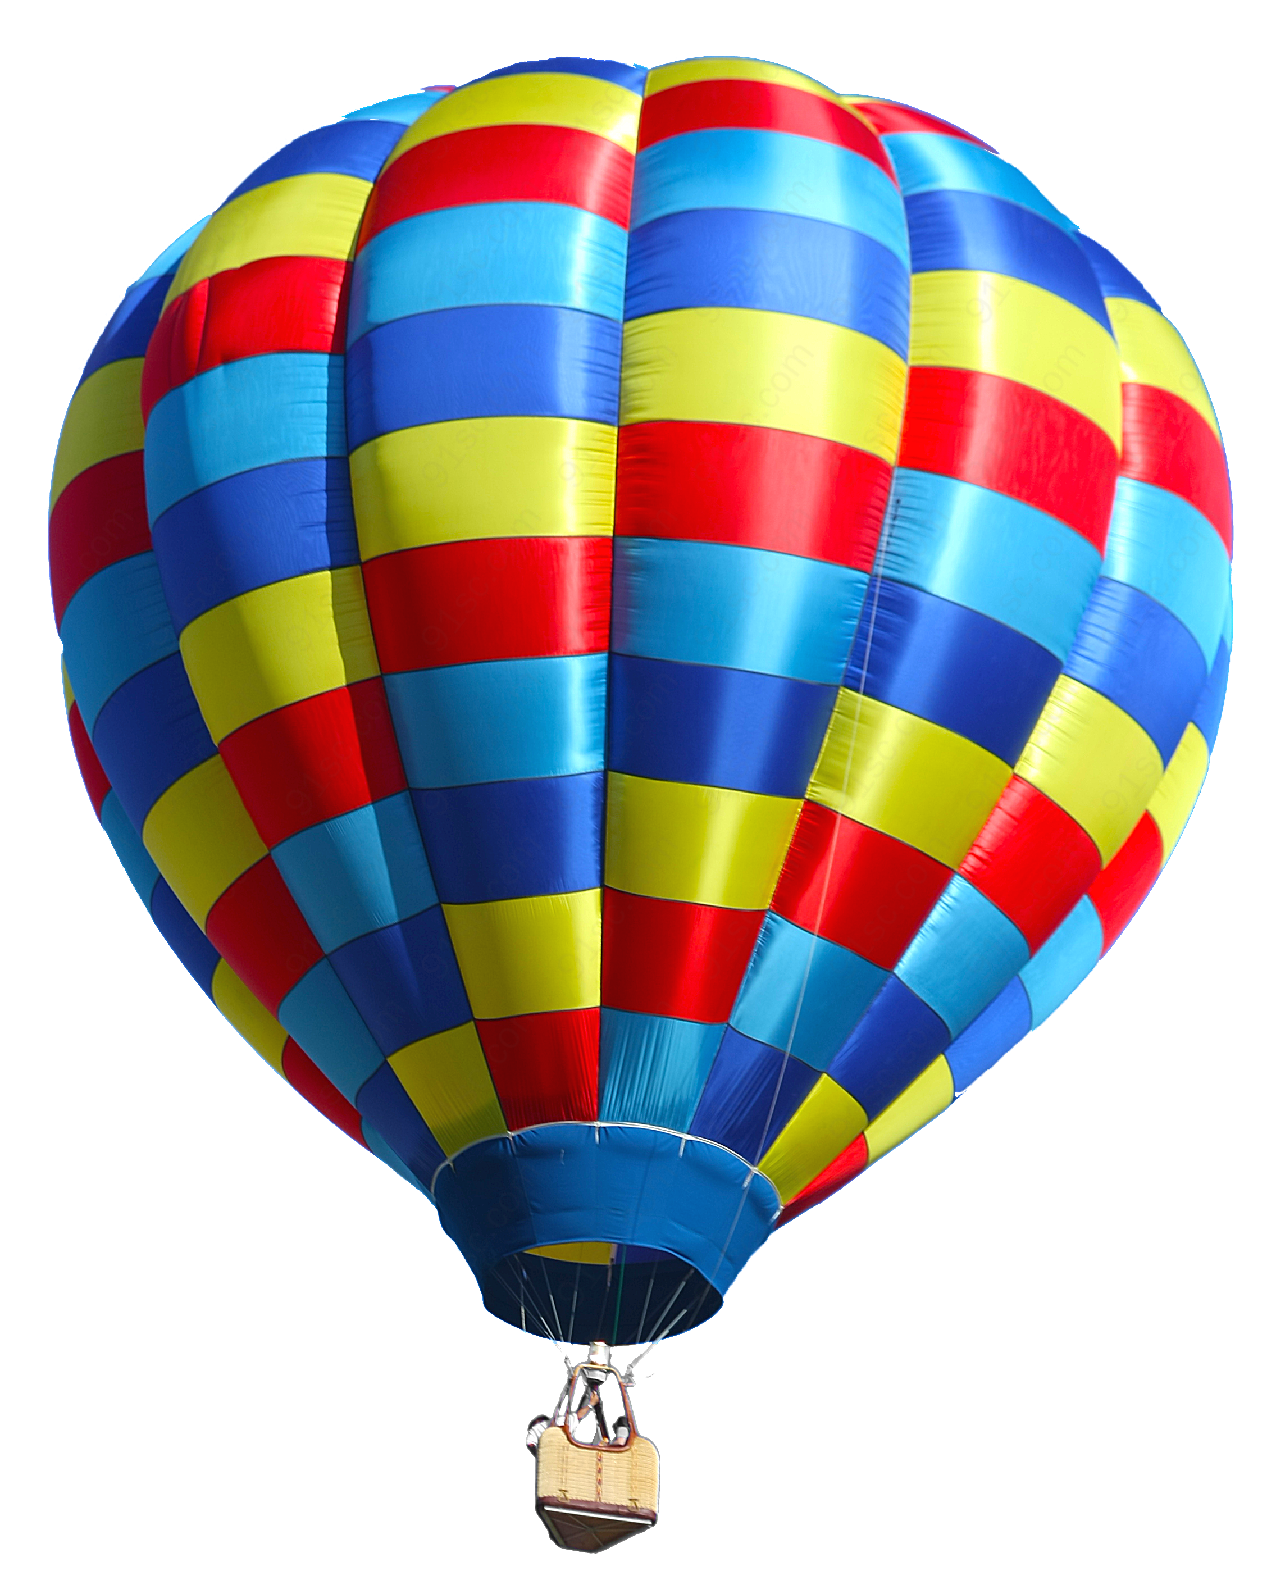 彩色热气球生物静物